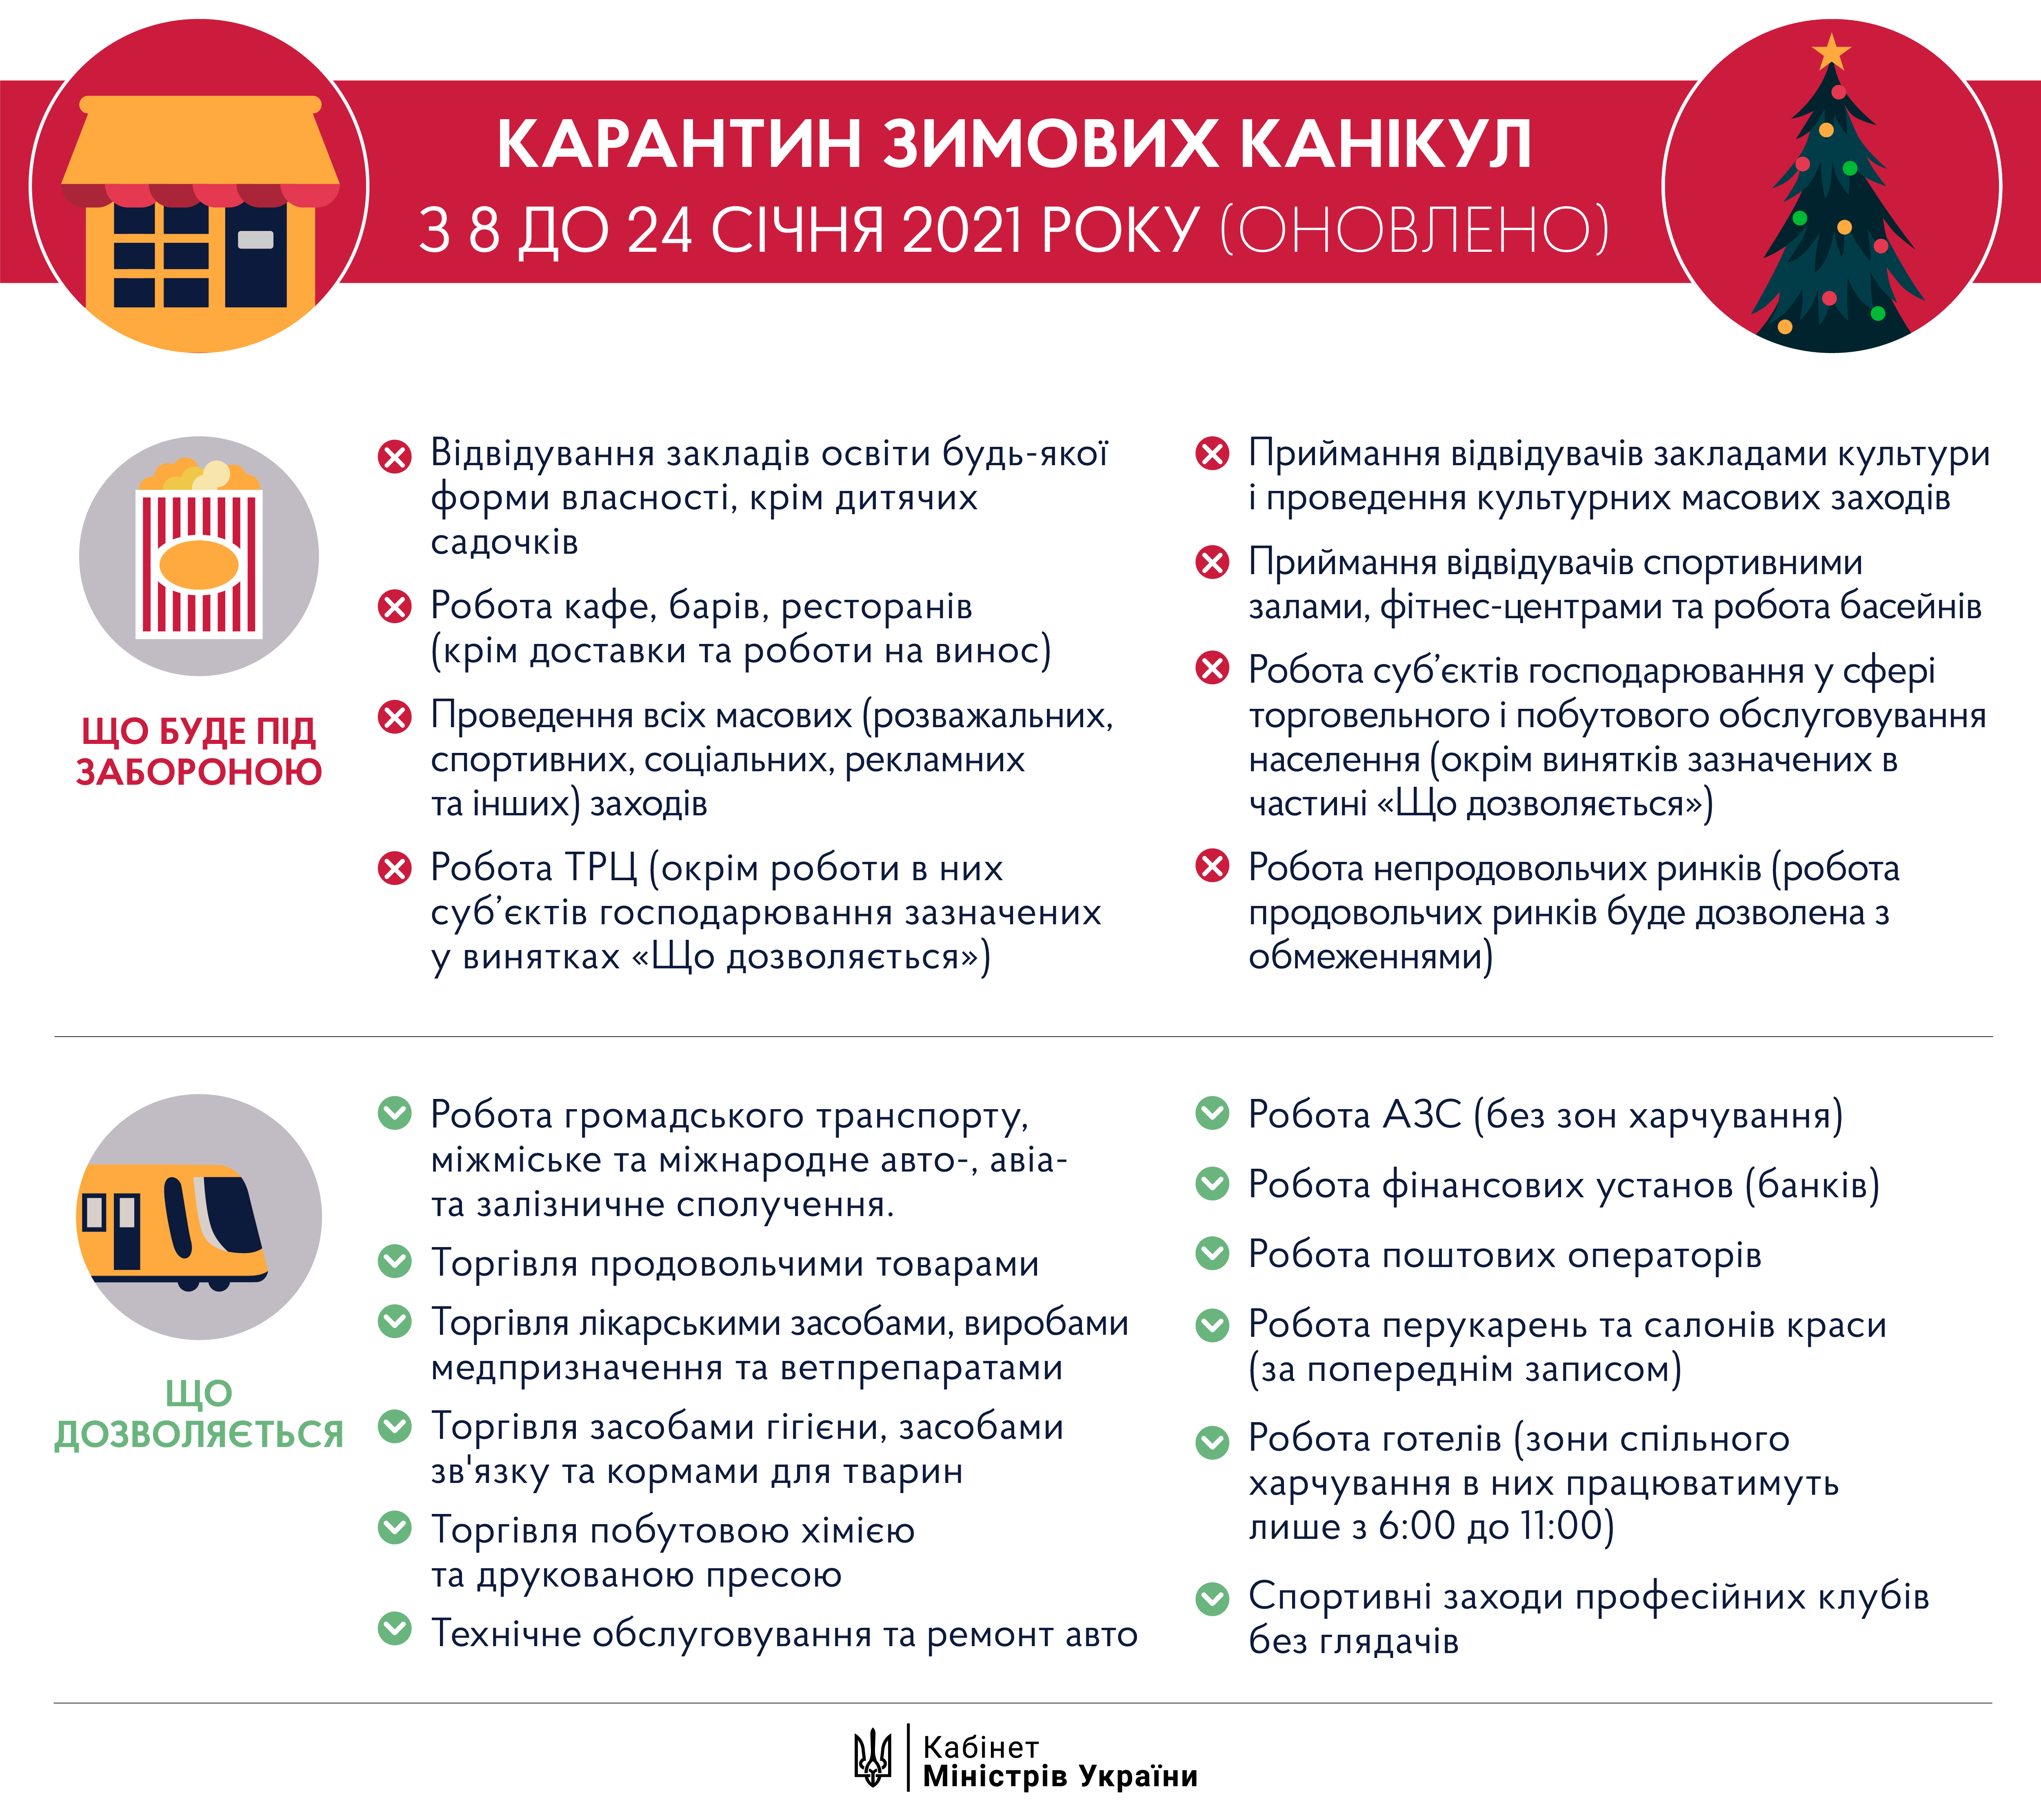 "Карантин зимних каникул" в Украине введен в действие!